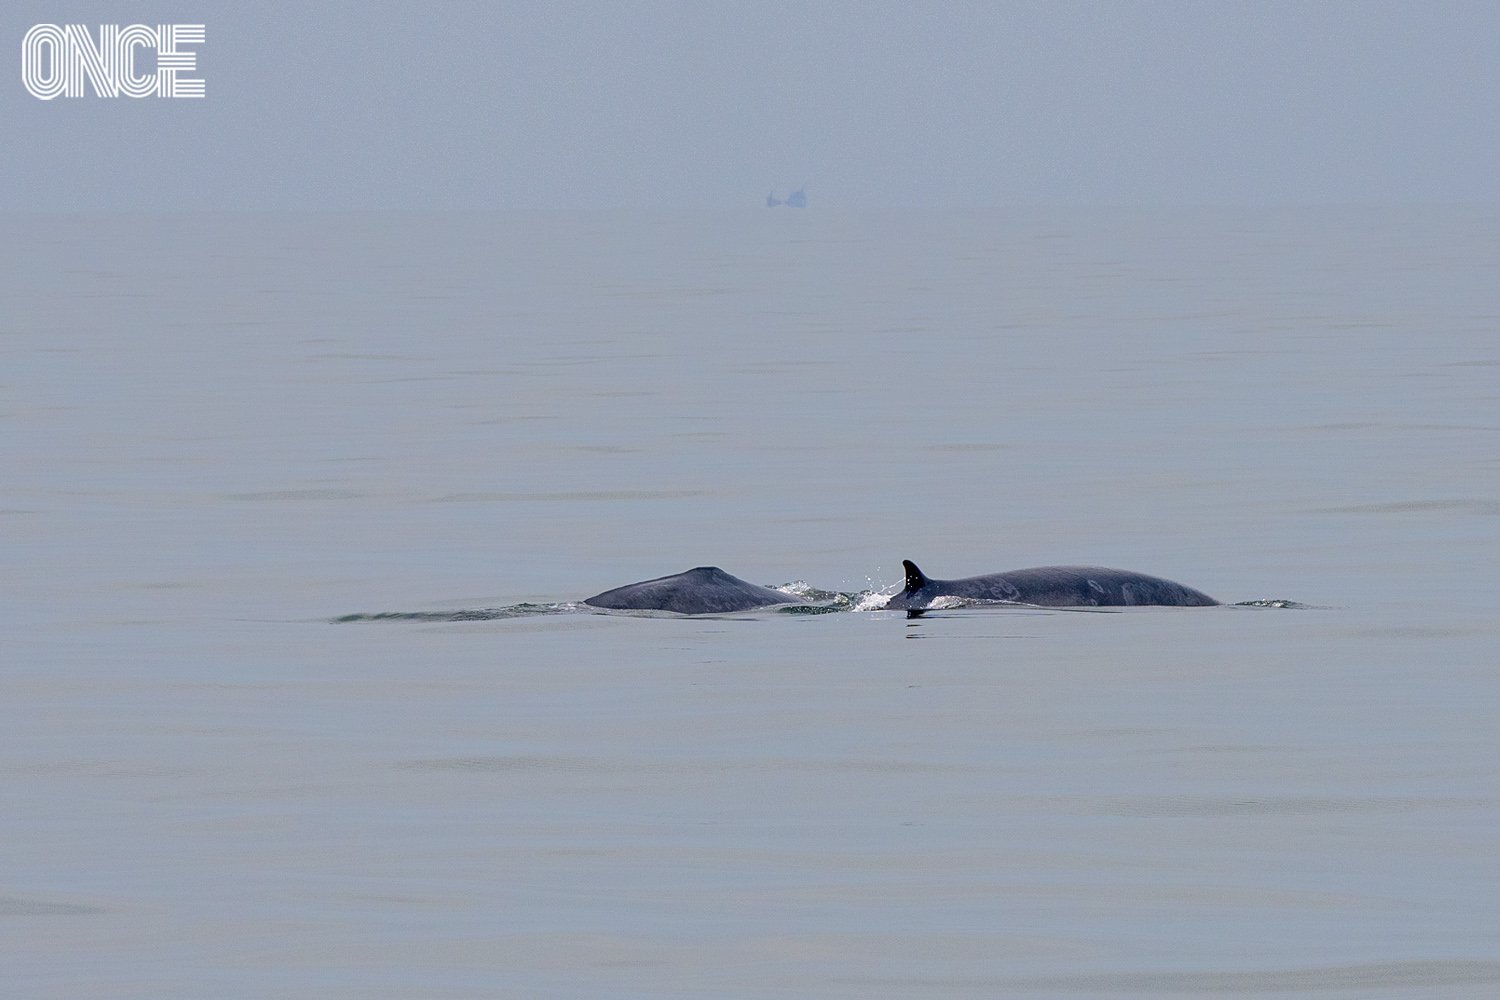 ล่องคาตามารันดู ‘บรูด้า’ วาฬสีหวานกลางอ่าวไทย กับเกร็ดน่ารู้ที่ทำให้ทริปสนุกขึ้น